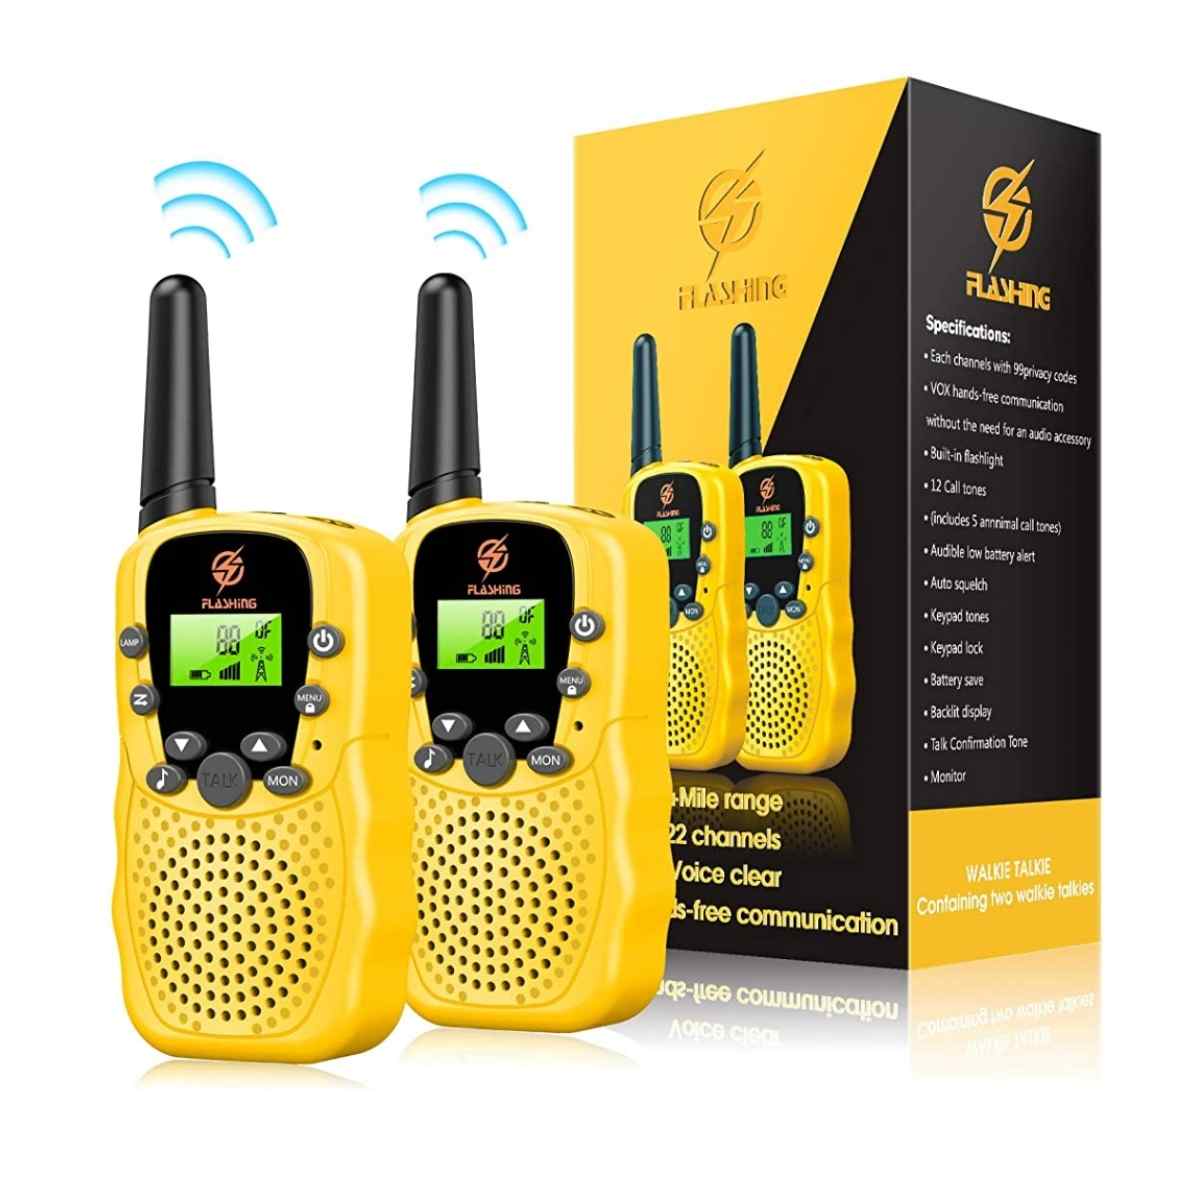 Snoky walkie talkies